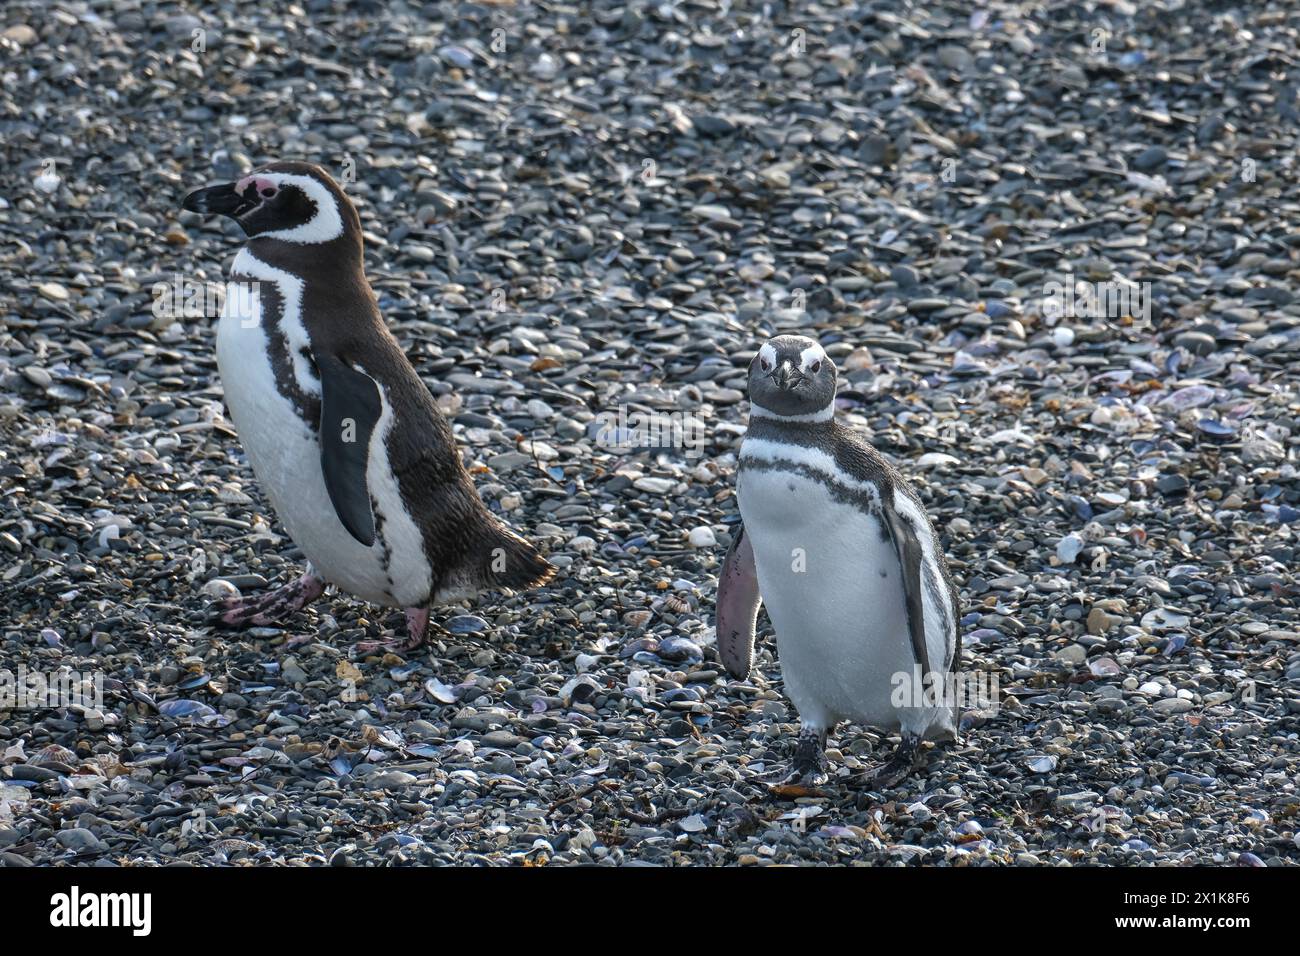 Ushuaia, Tierra del Fuego, Argentinien - Magellan-Pinguine auf der Isla Martillo im Beagle-Kanal, der Beagle-Kanal ist eine natürliche Wasserstraße an der Sou Stockfoto